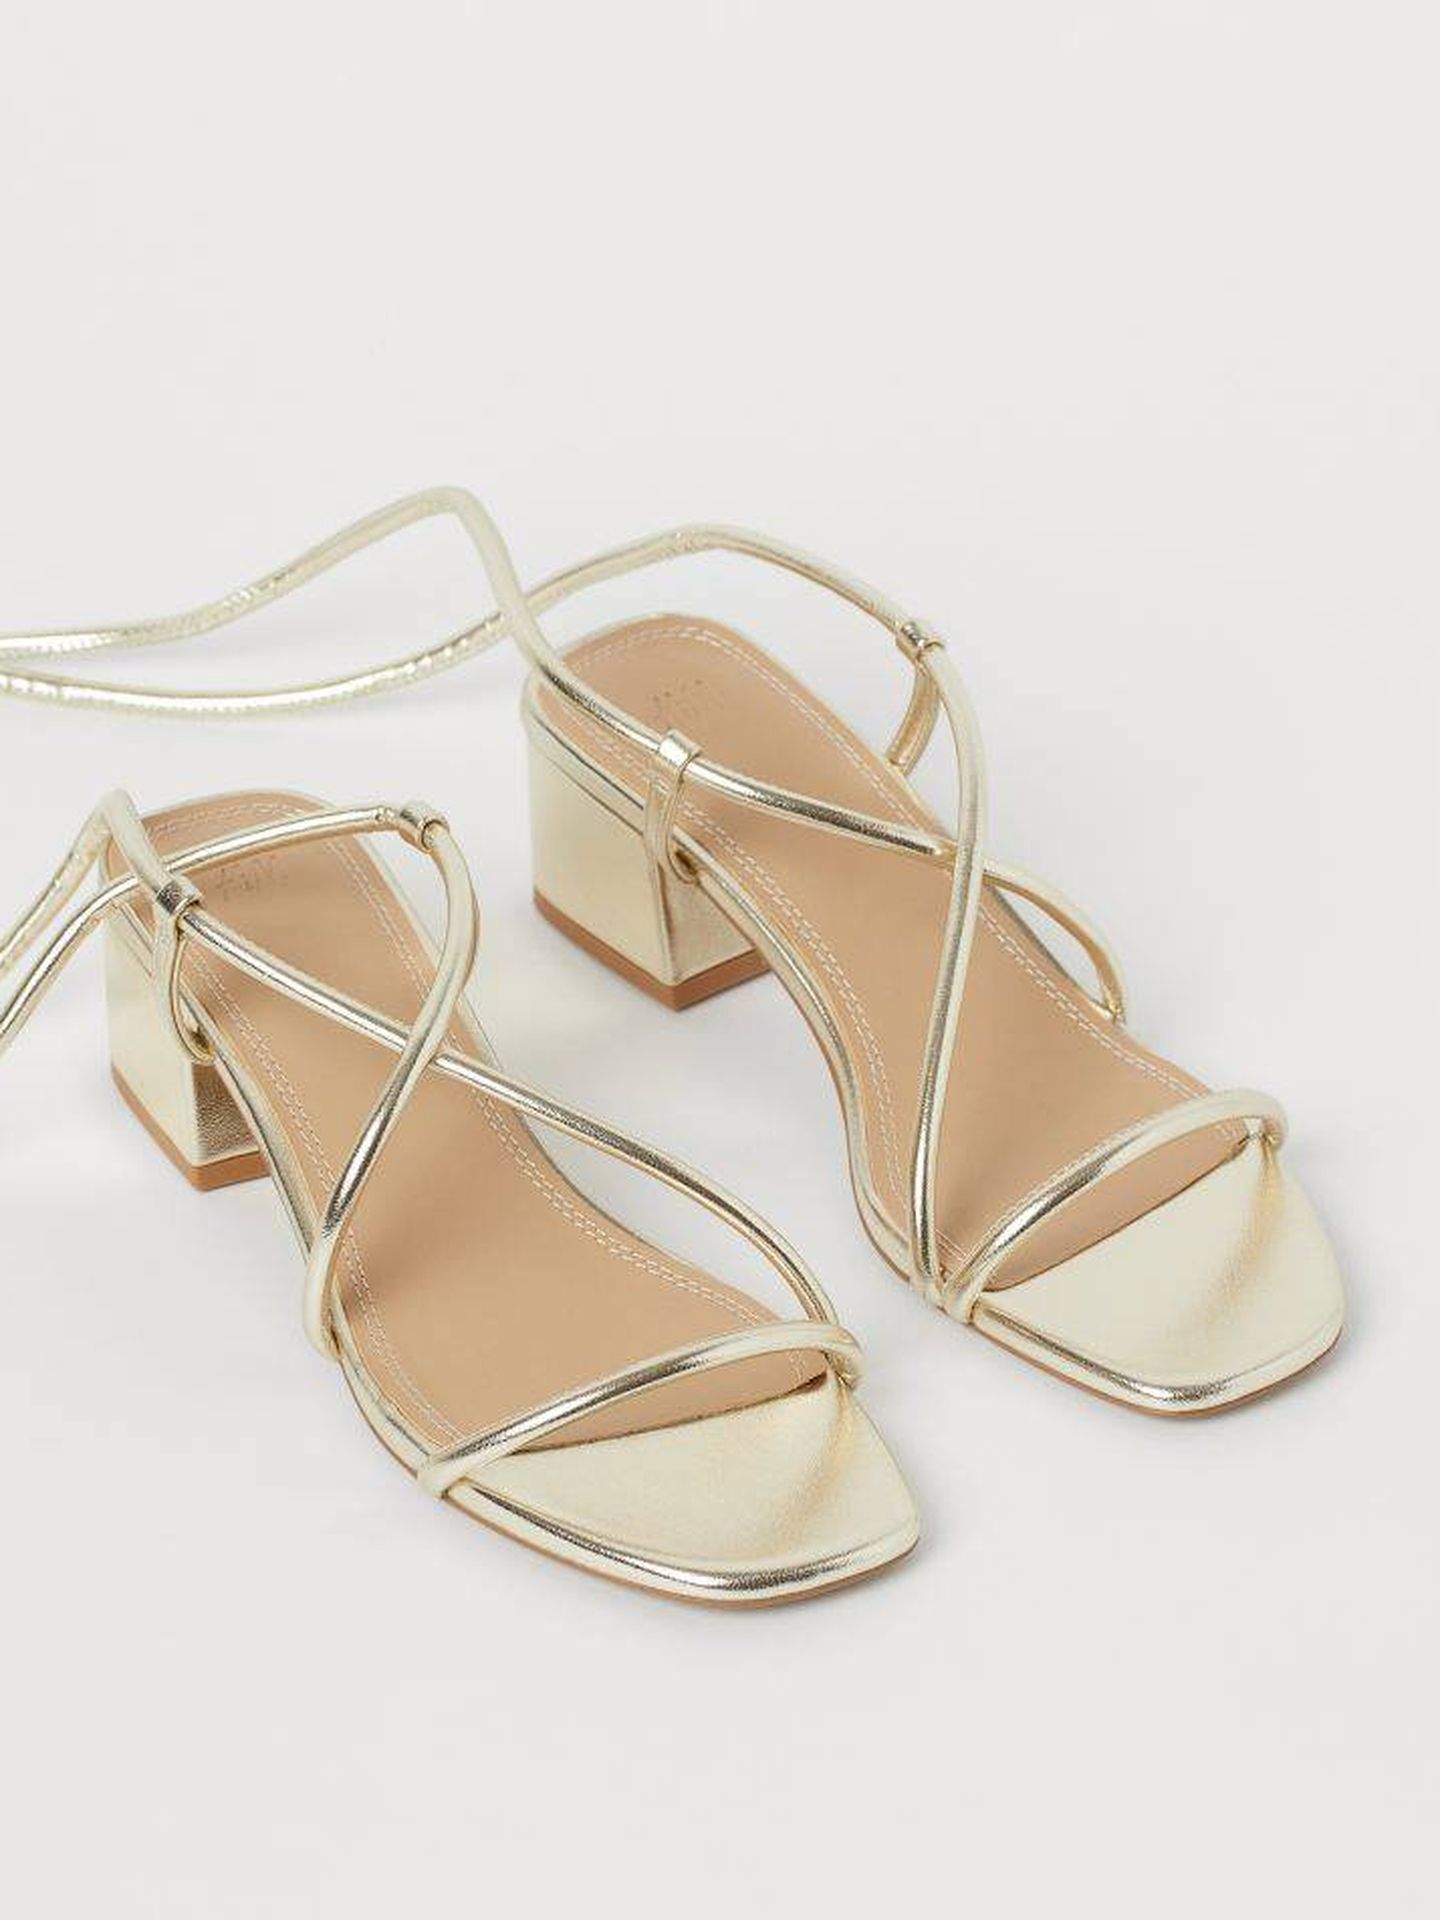 Las sandalias doradas de H&M. (Cortesía)